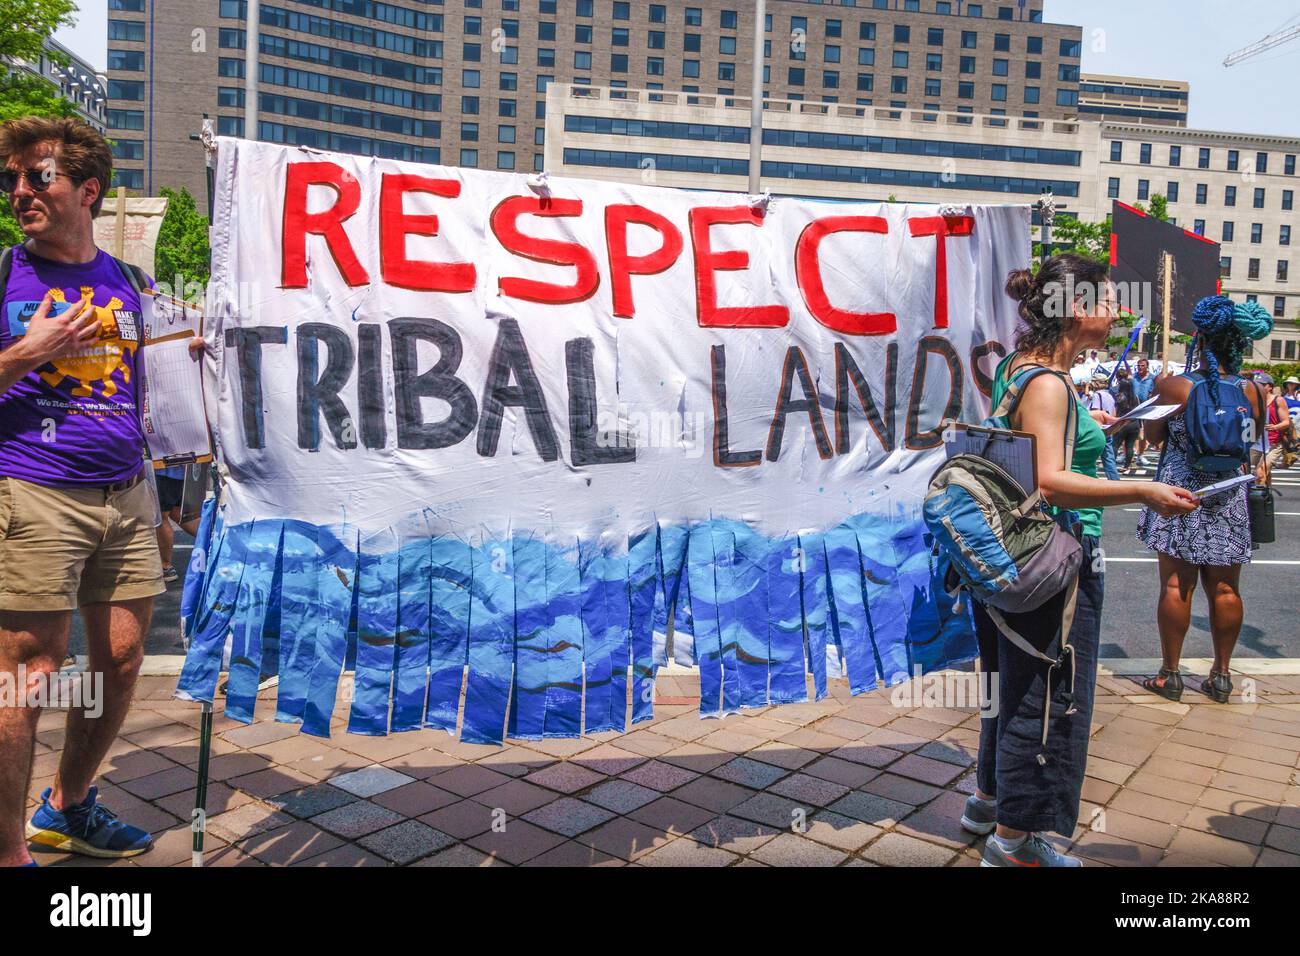 Washington, DC, US-29 aprile 2017: I manifestanti della manifestazione sul cambiamento climatico hanno un cartello con la scritta "RESPECT Tribal Lands". Foto Stock